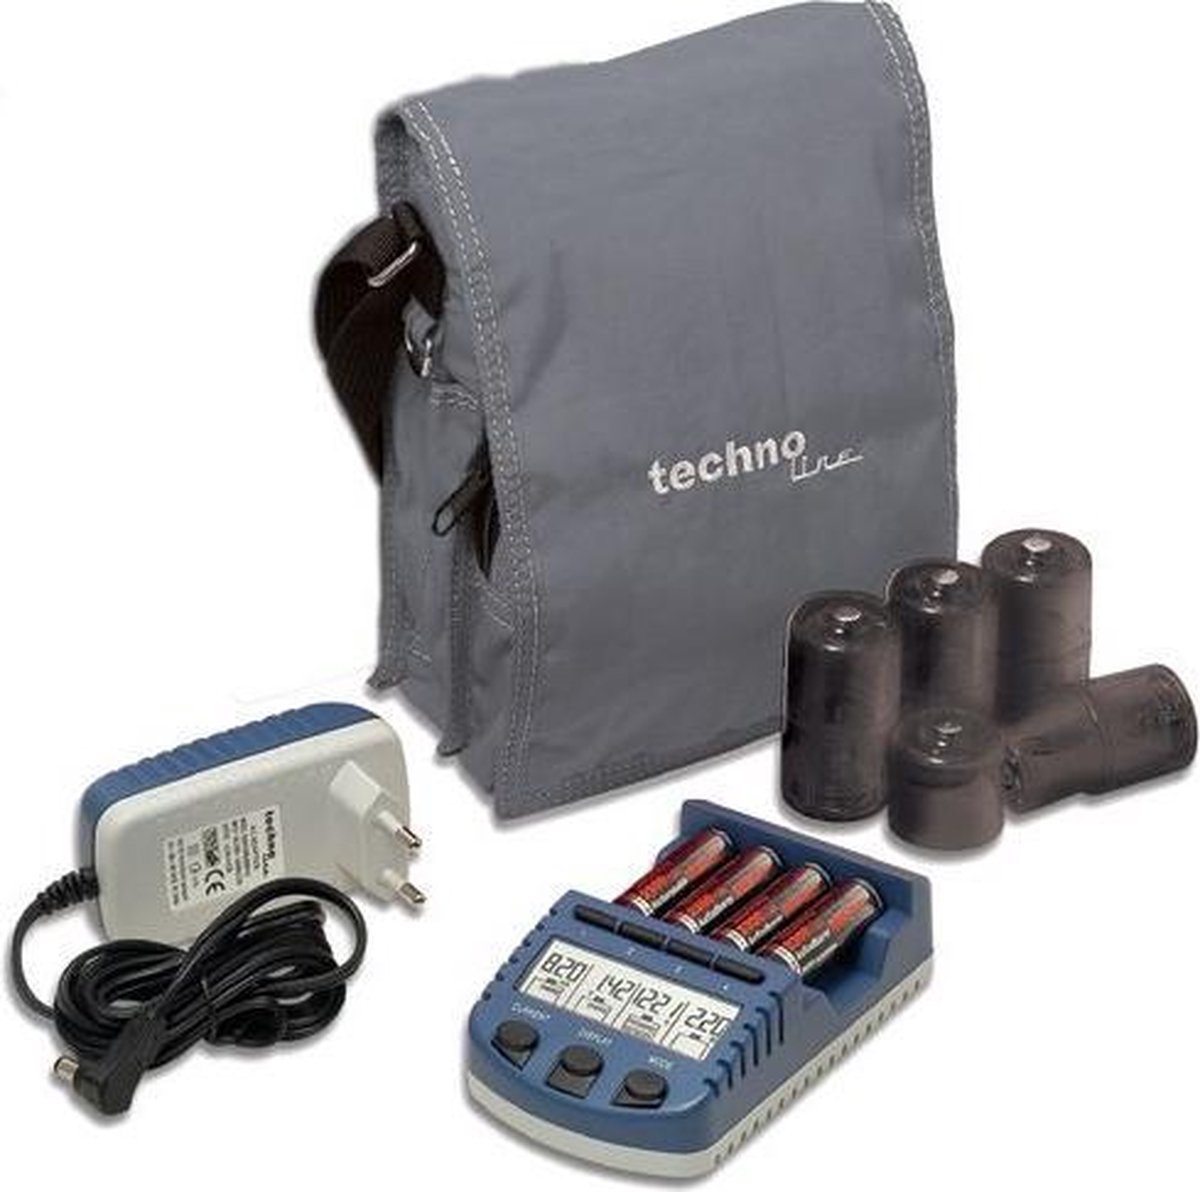 Batterij oplader met 4 oplaadbare batterijen - Technoline BC1000